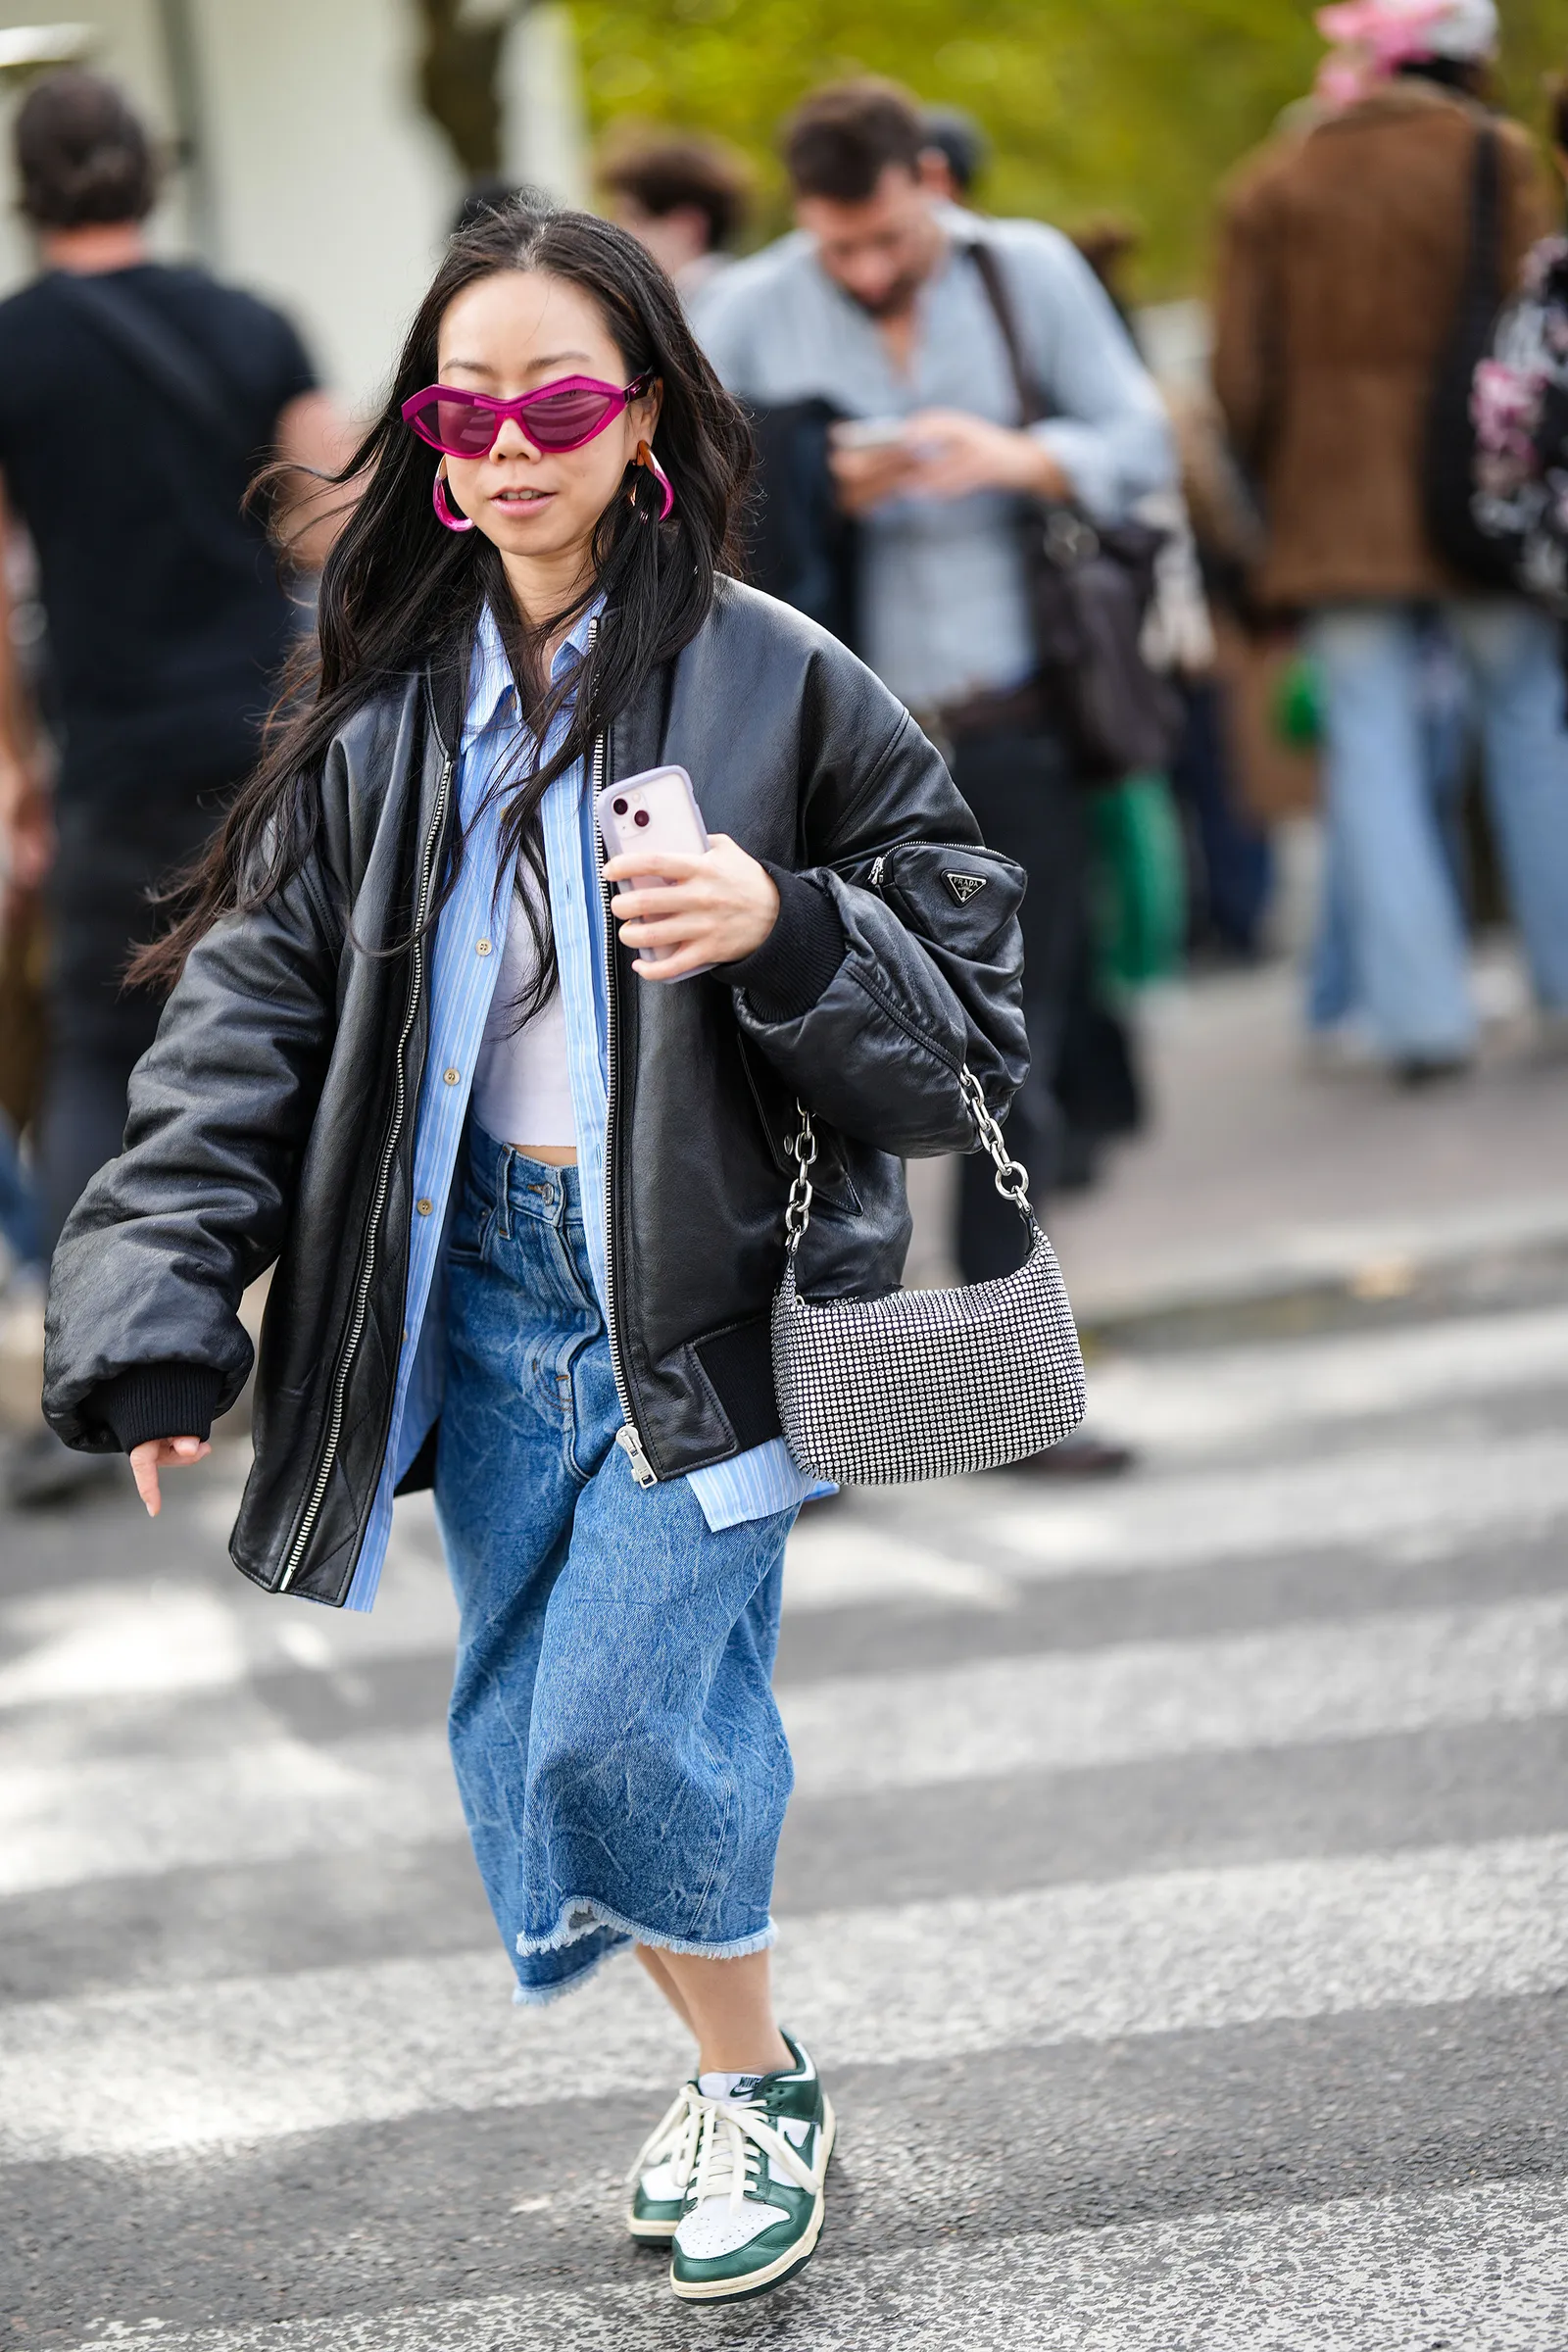 Skórzana kurtka idealnie pasuje do jeansowej spódnicy midi i sneakersów / Fot. Getty Images